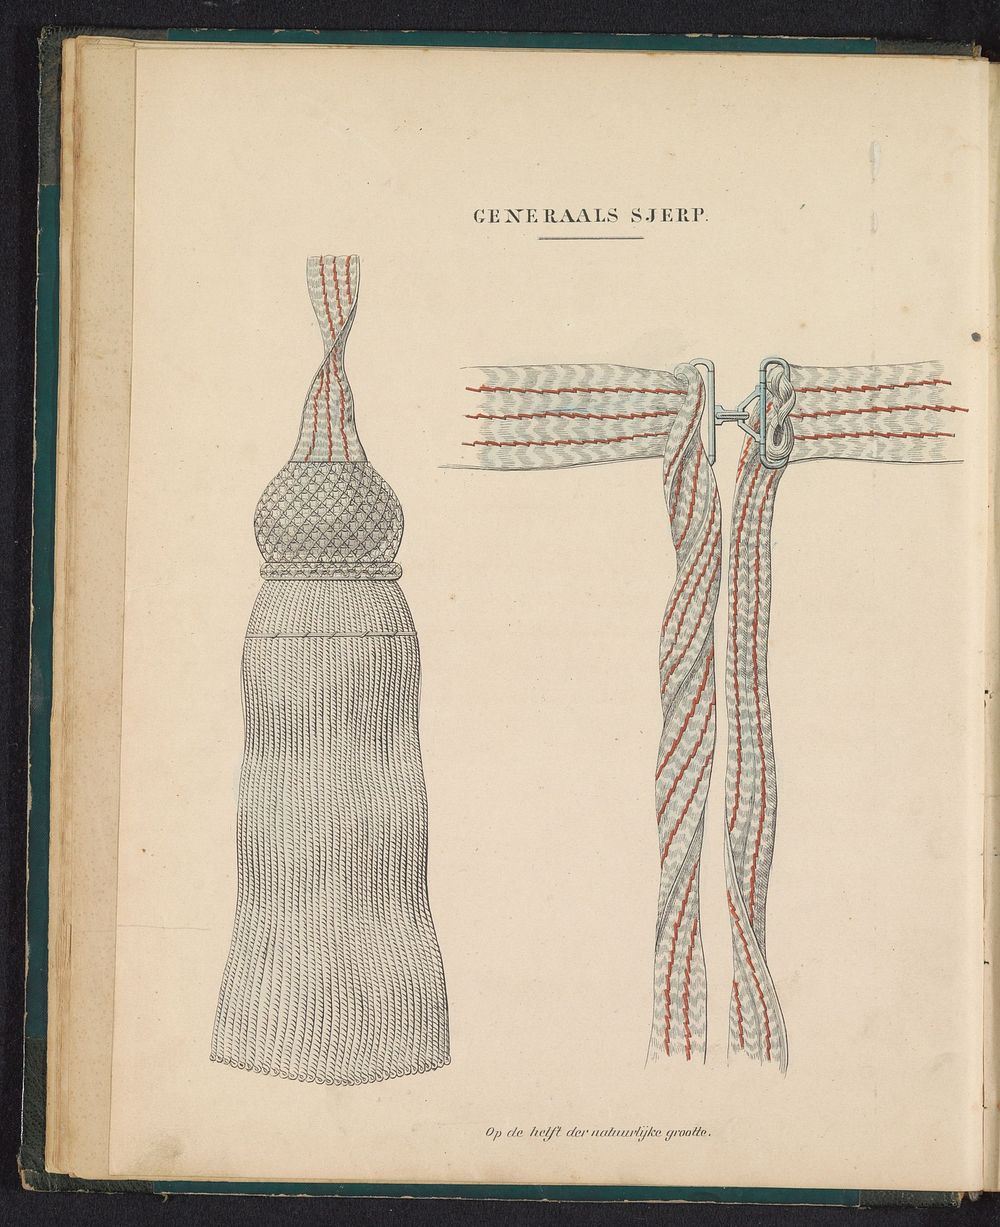 Sjerp behorende bij de uniformen van de generaals, 1845 (1845) by Willem Charles Magnenat and Louis Salomon Leman